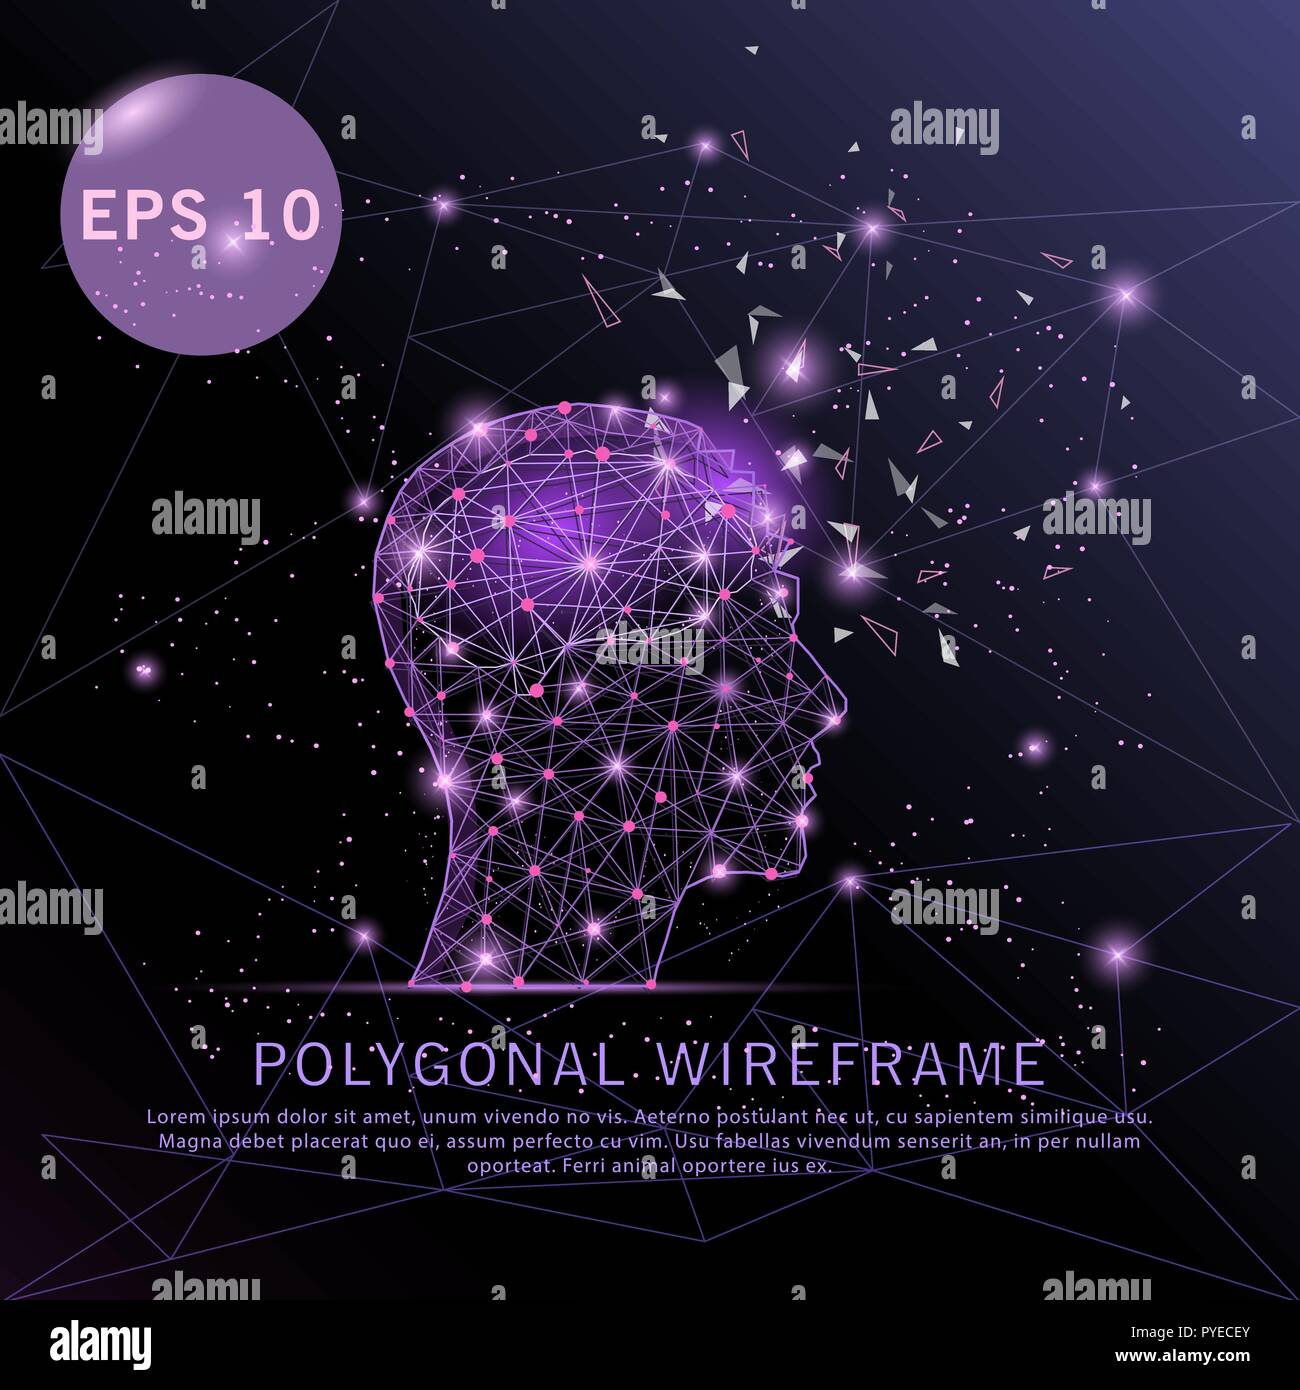 Testa con il cervello viola poligonale disegnati digitalmente avveniristico bassa poli wire frame punto forma, composizione e linee illustrazione vettoriale. Illustrazione Vettoriale